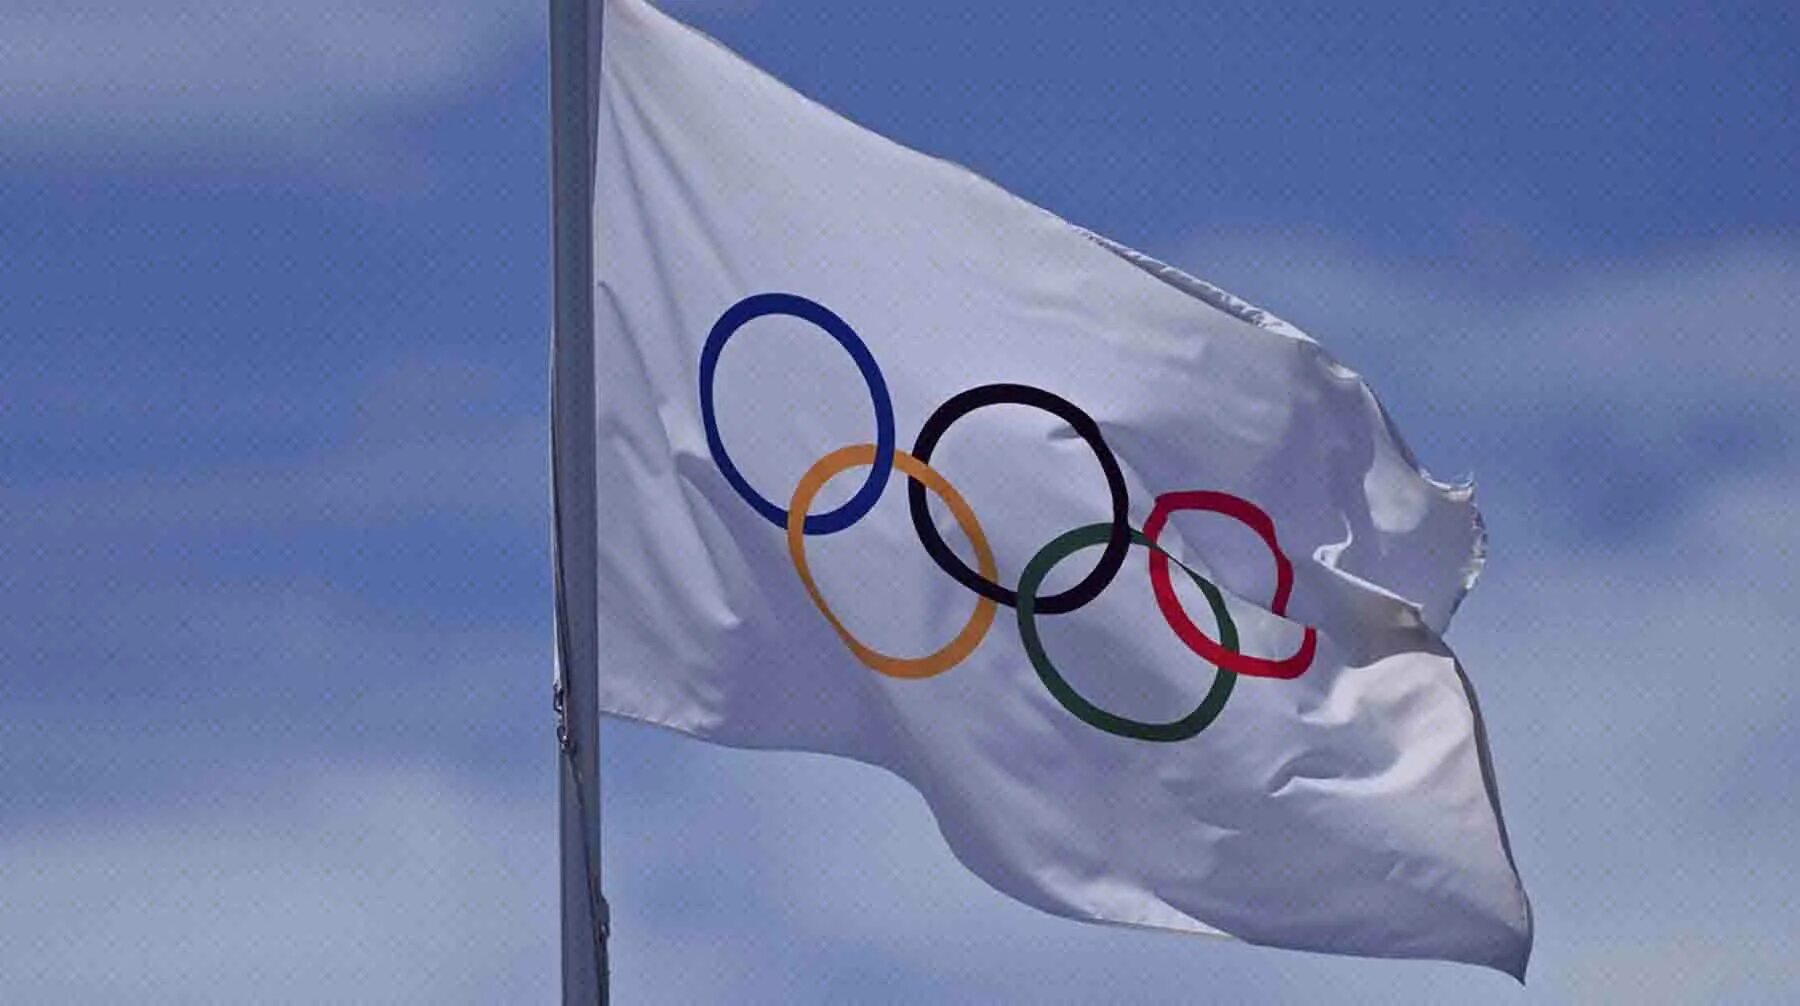 Флаг российского олимпийского